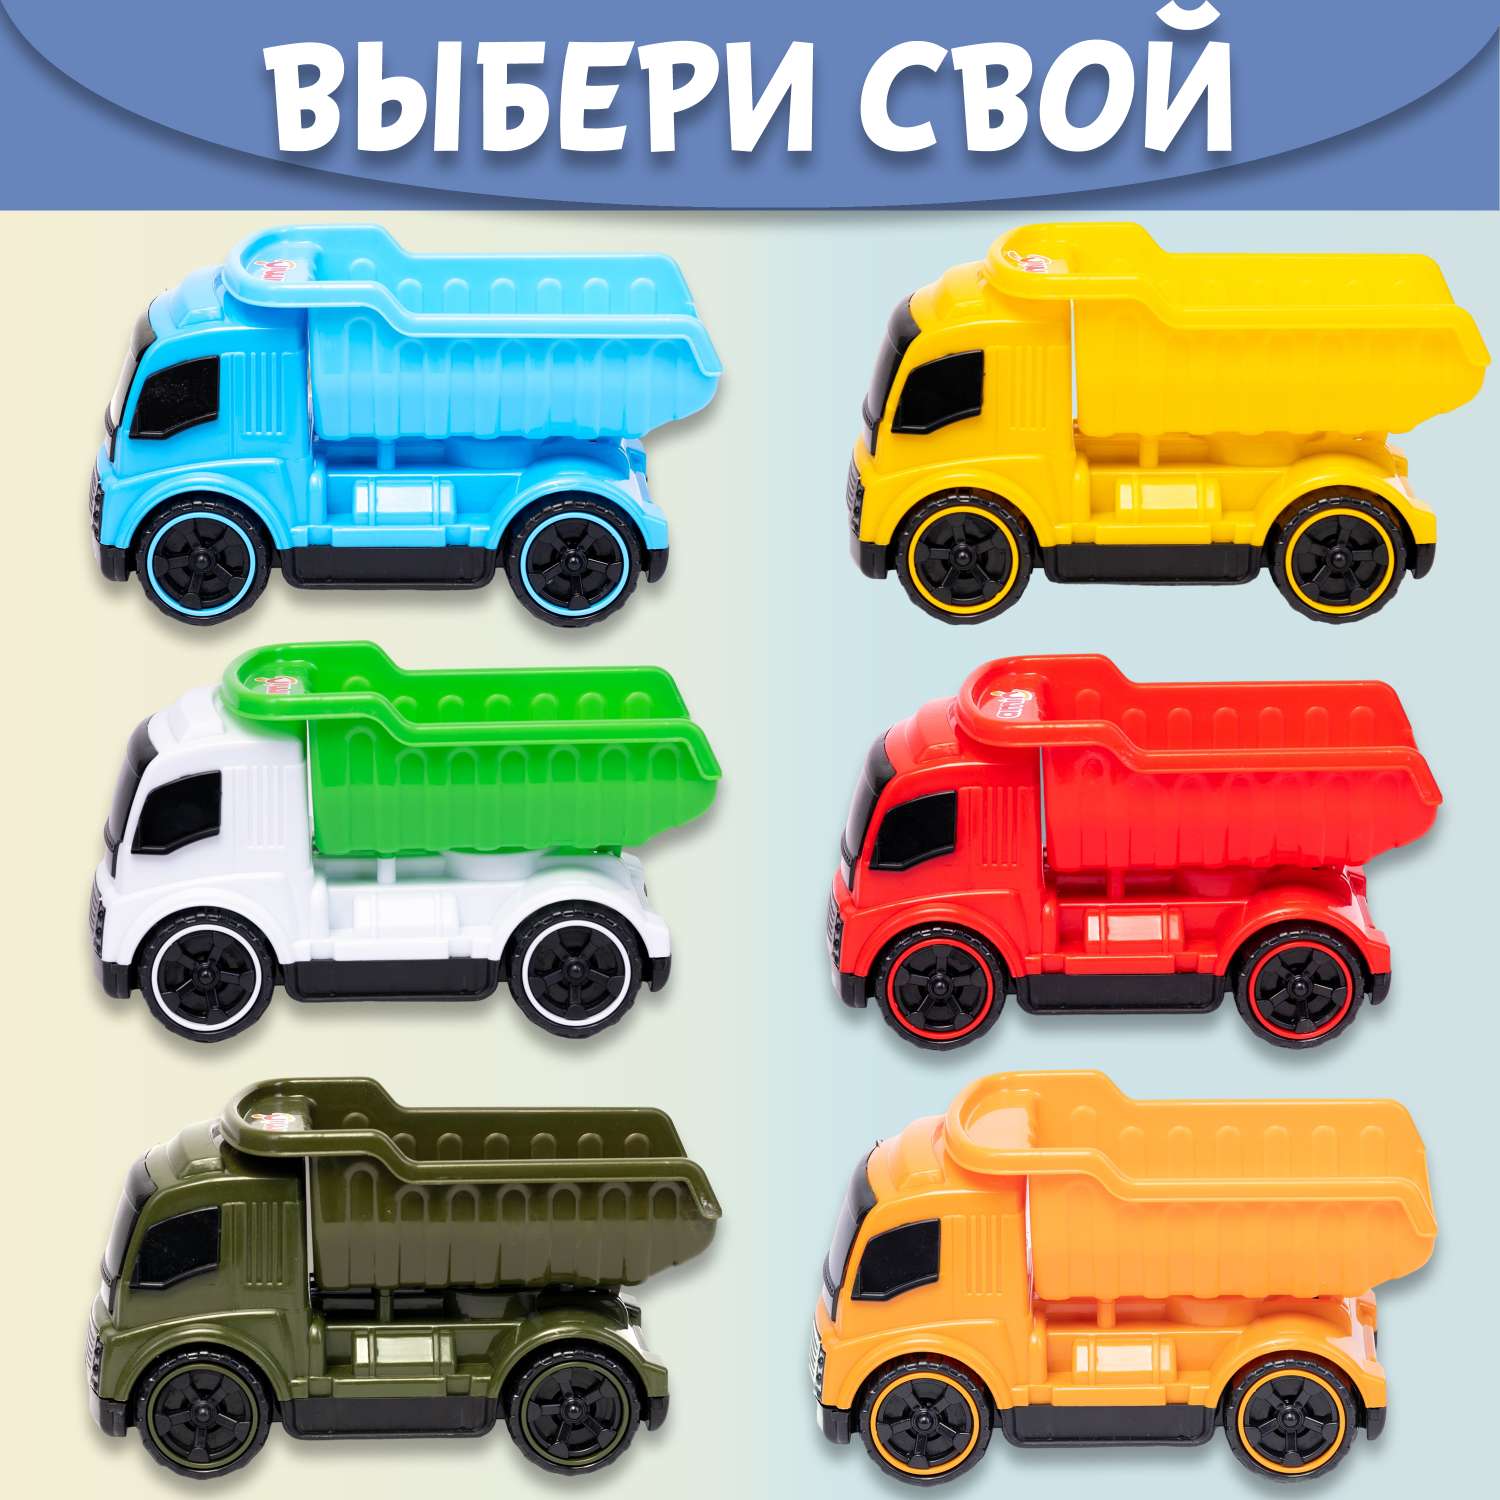 Машинка Нижегородская игрушка Самосвал оранжевый ктг270_ор - фото 8